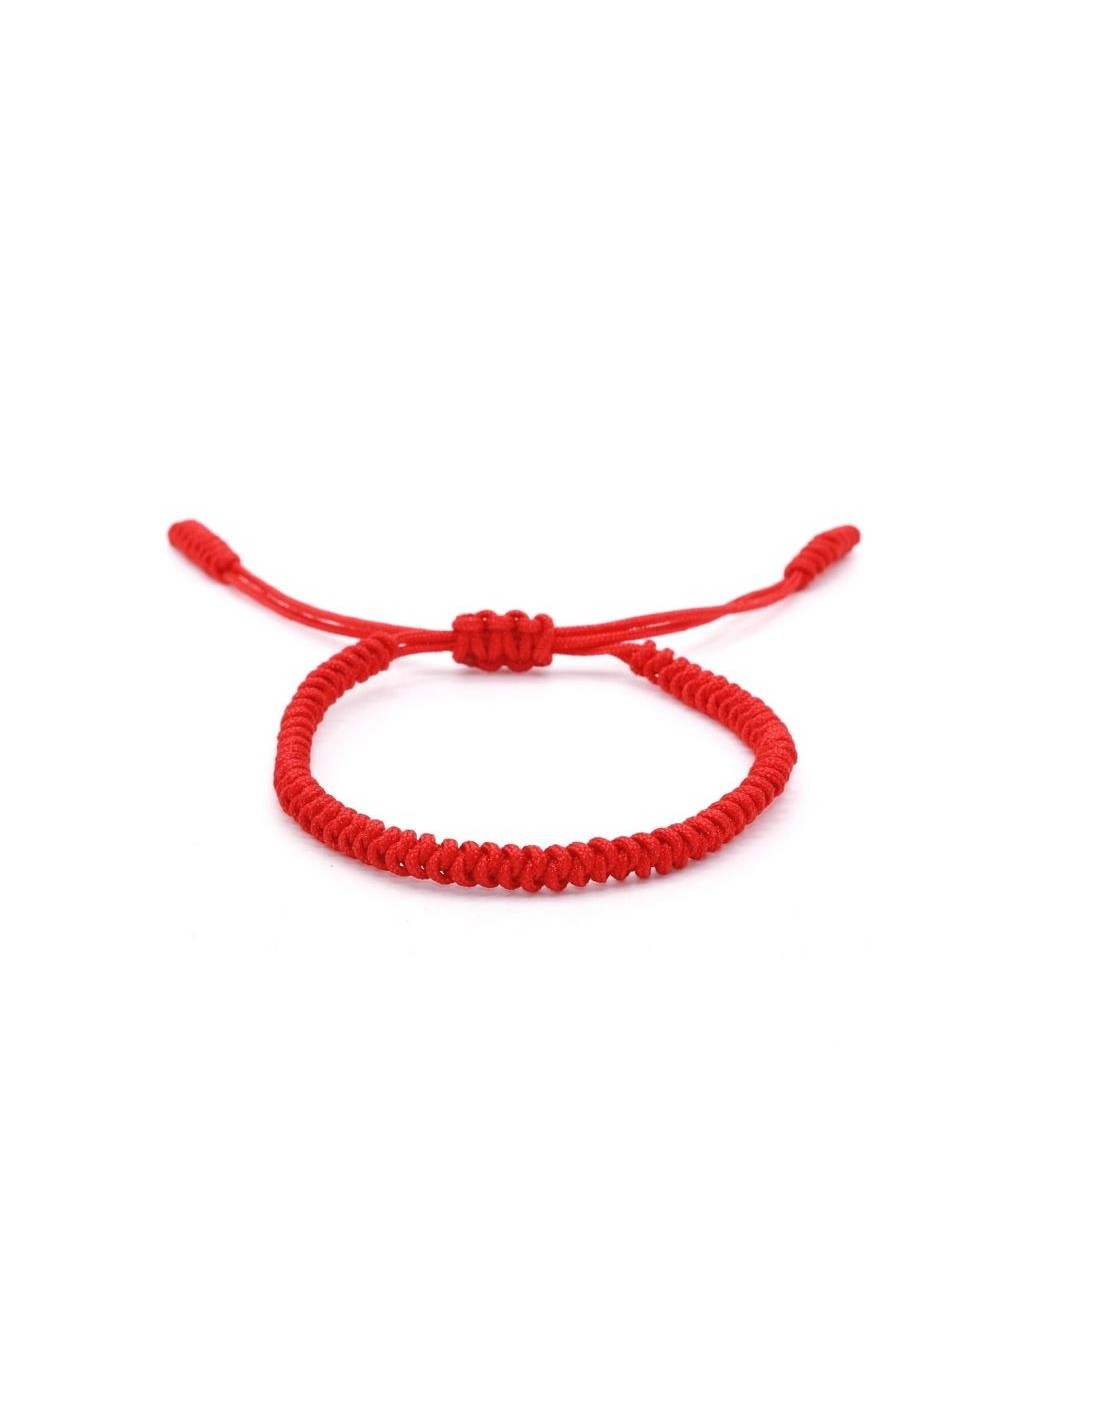 Bracelet porte bonheur femme : l'accessoire pour optimiser votre chance